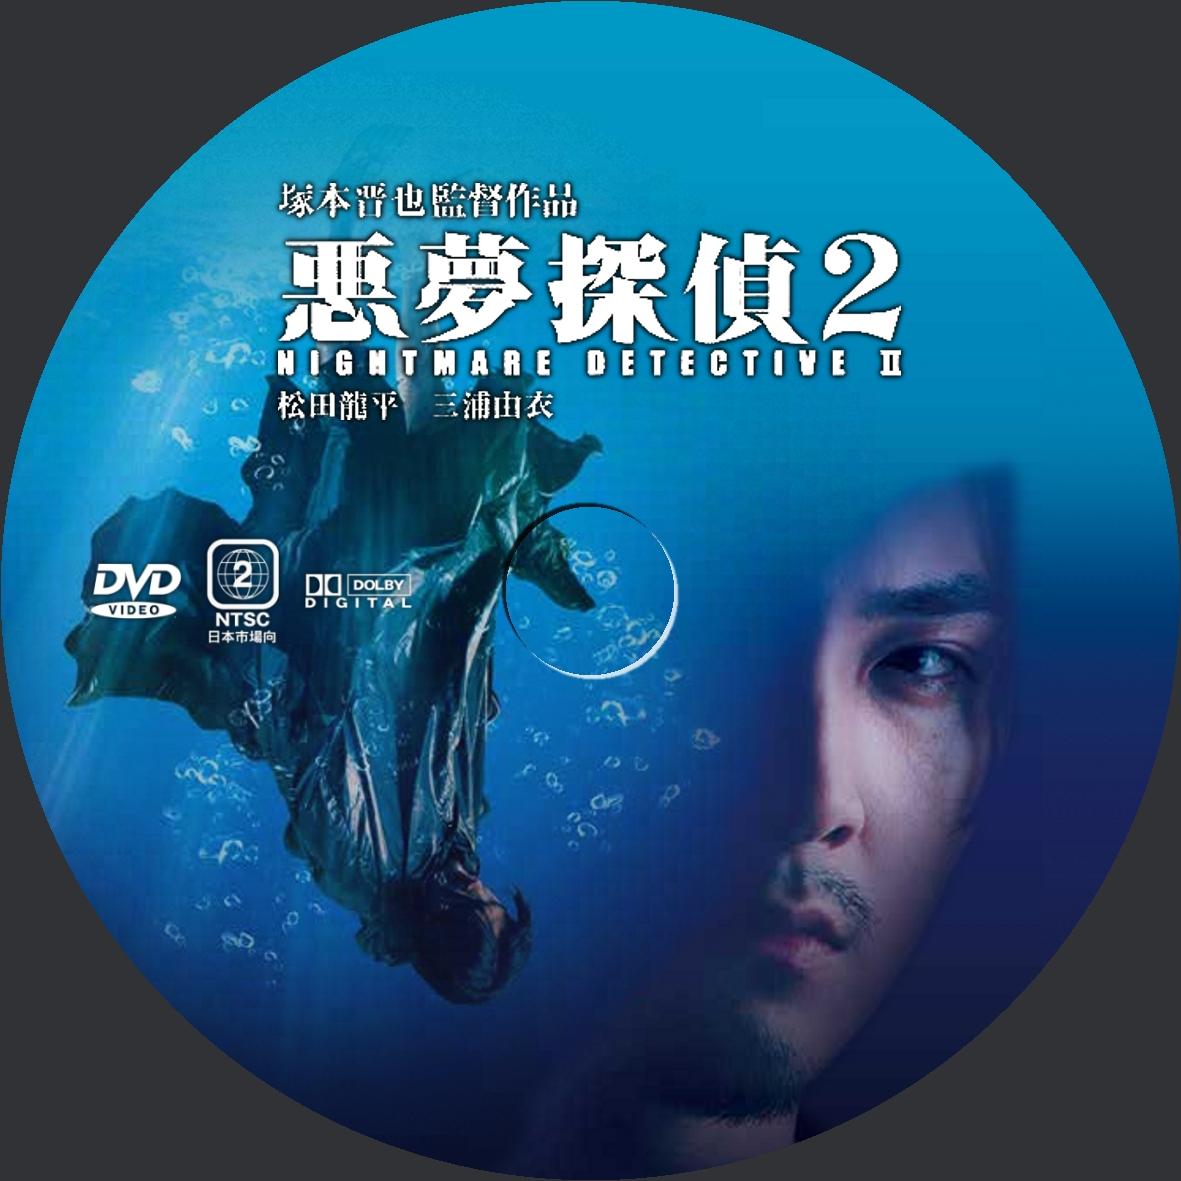 悪夢探偵2 DVDラベル 映画のDVDラベル